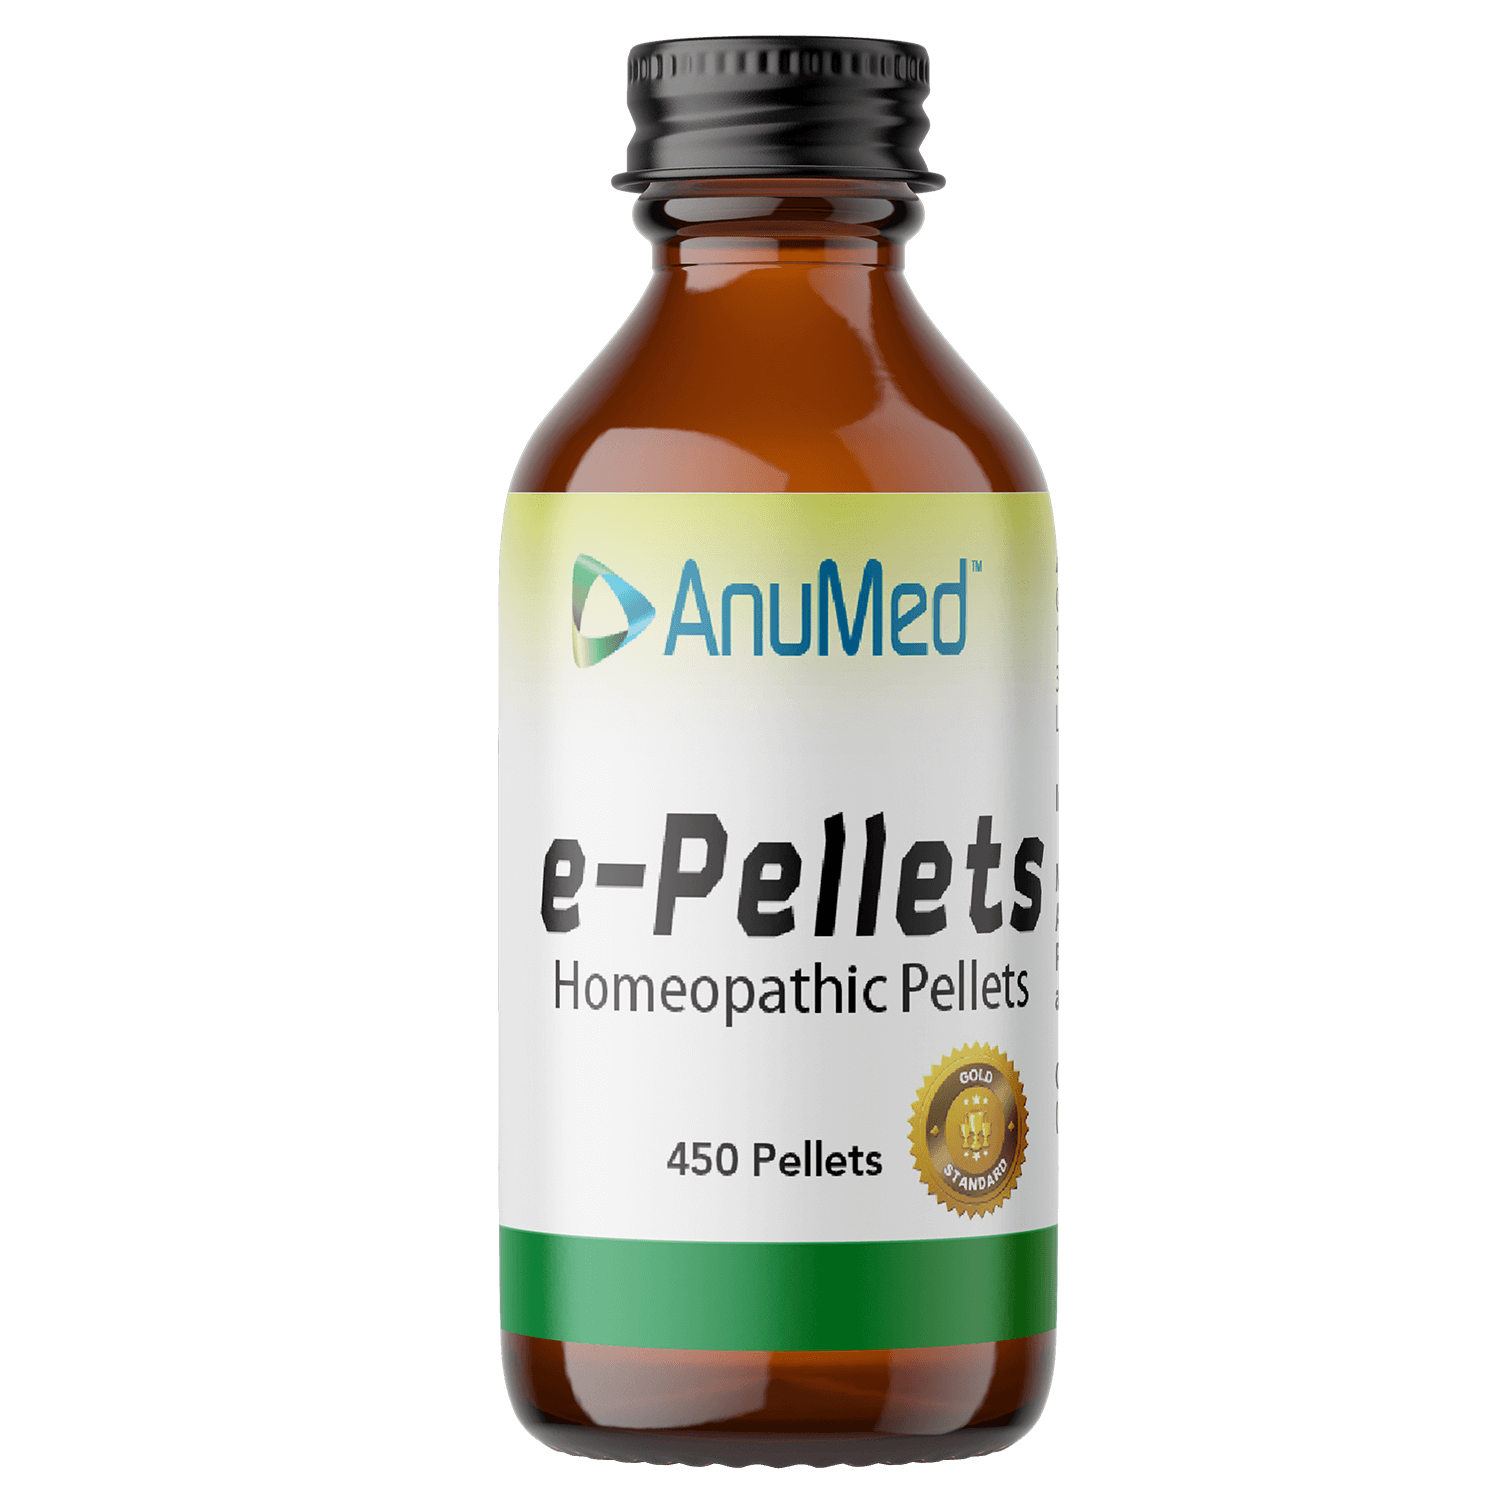 e-pellets Premium Healthy Detox, Appetite Control 450 pellets